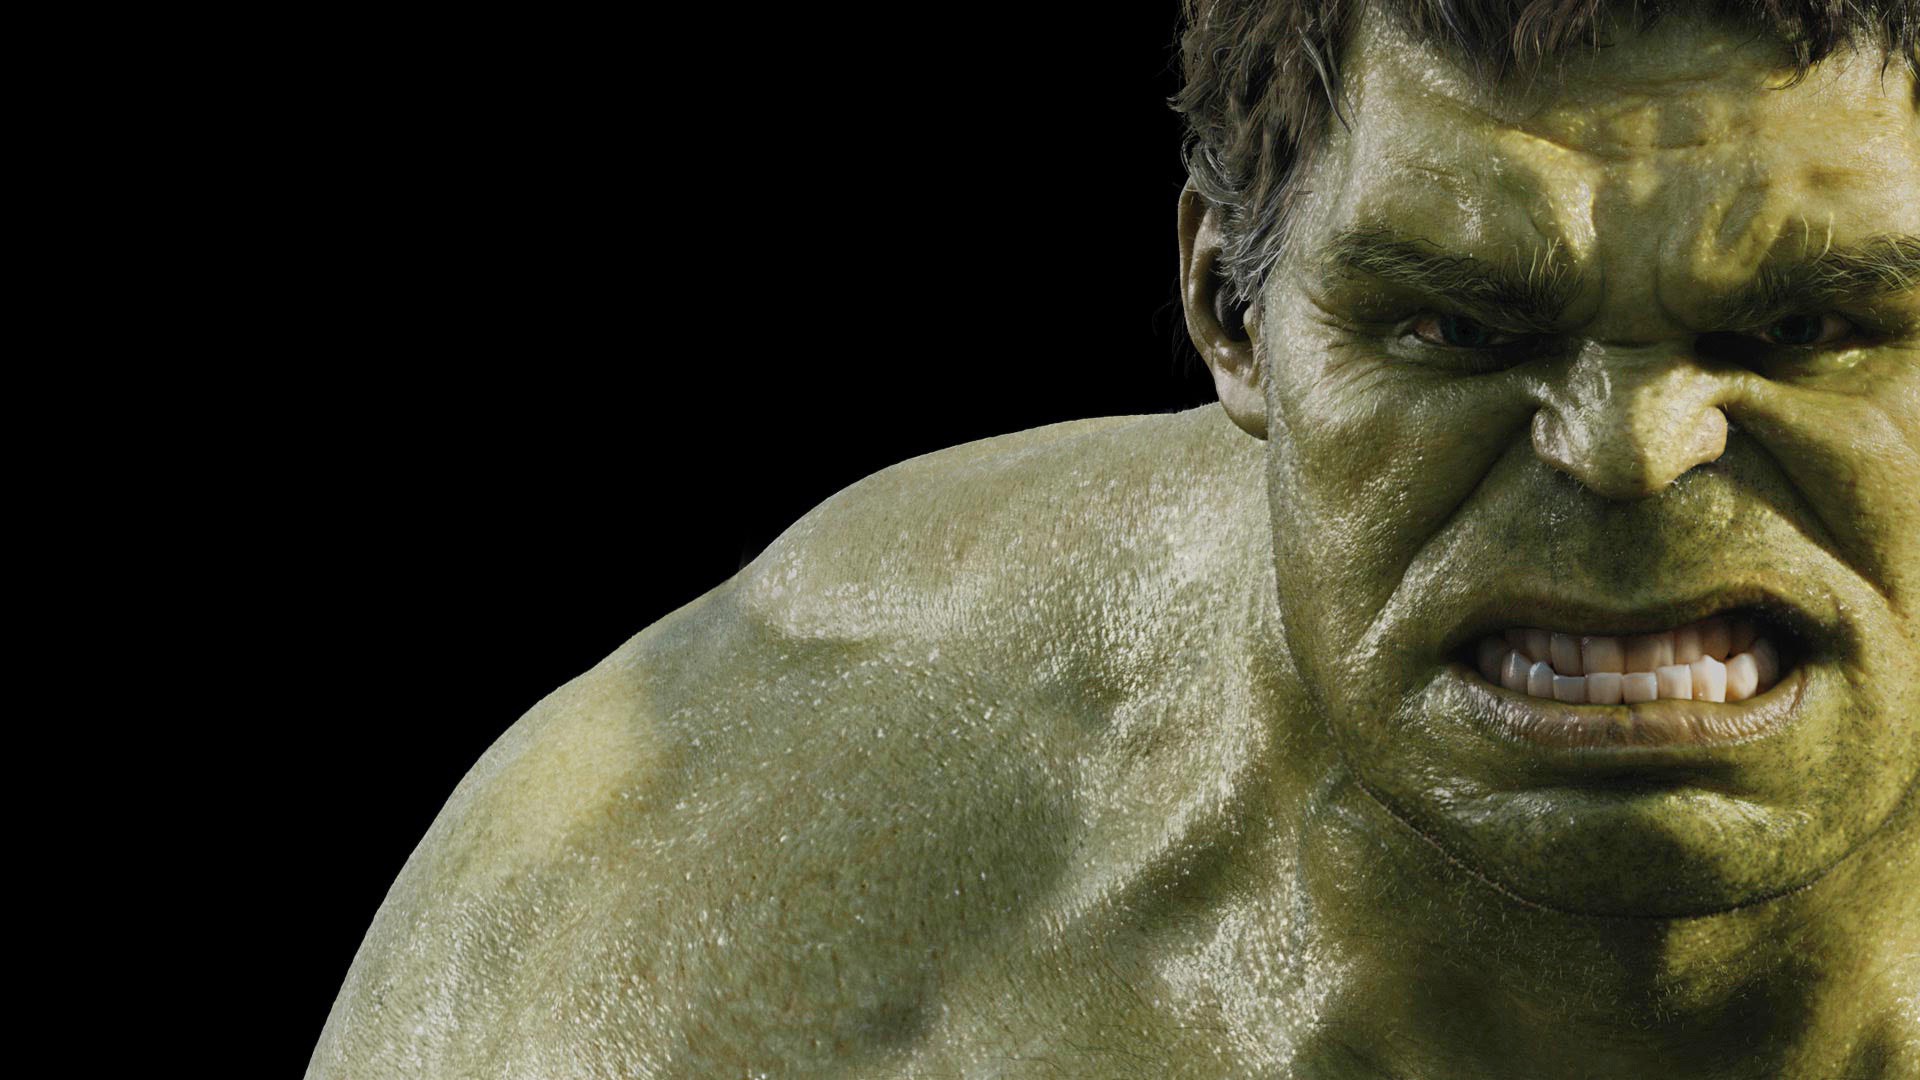 Incredible Hulk Wallpaper For Desktop Dark Windows HD